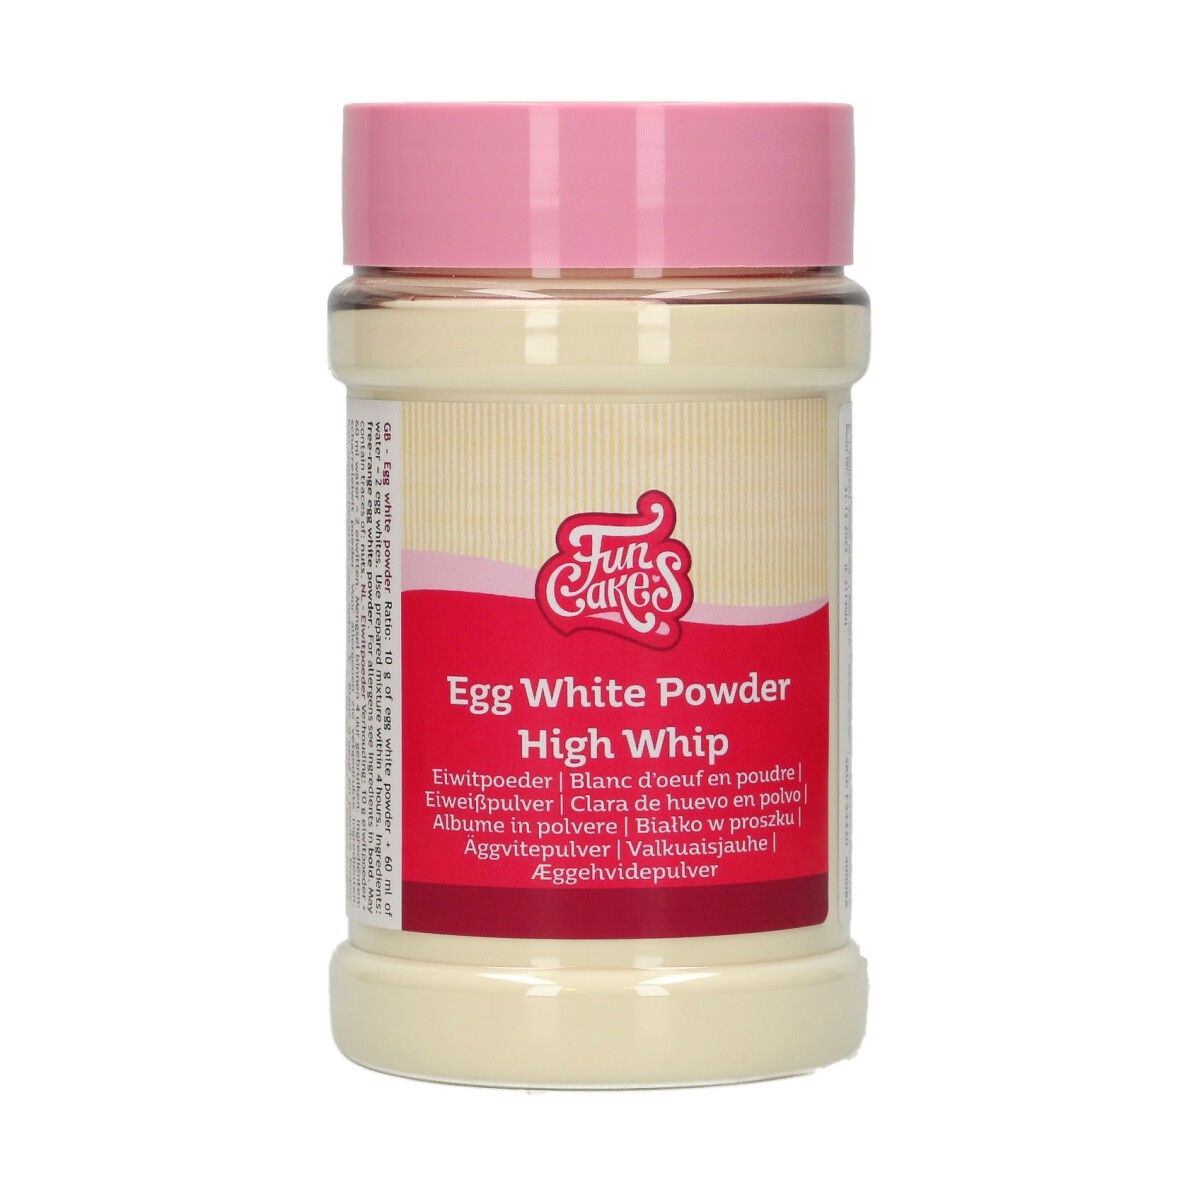 Billede af Egg White Powder "High Whip" 125 g